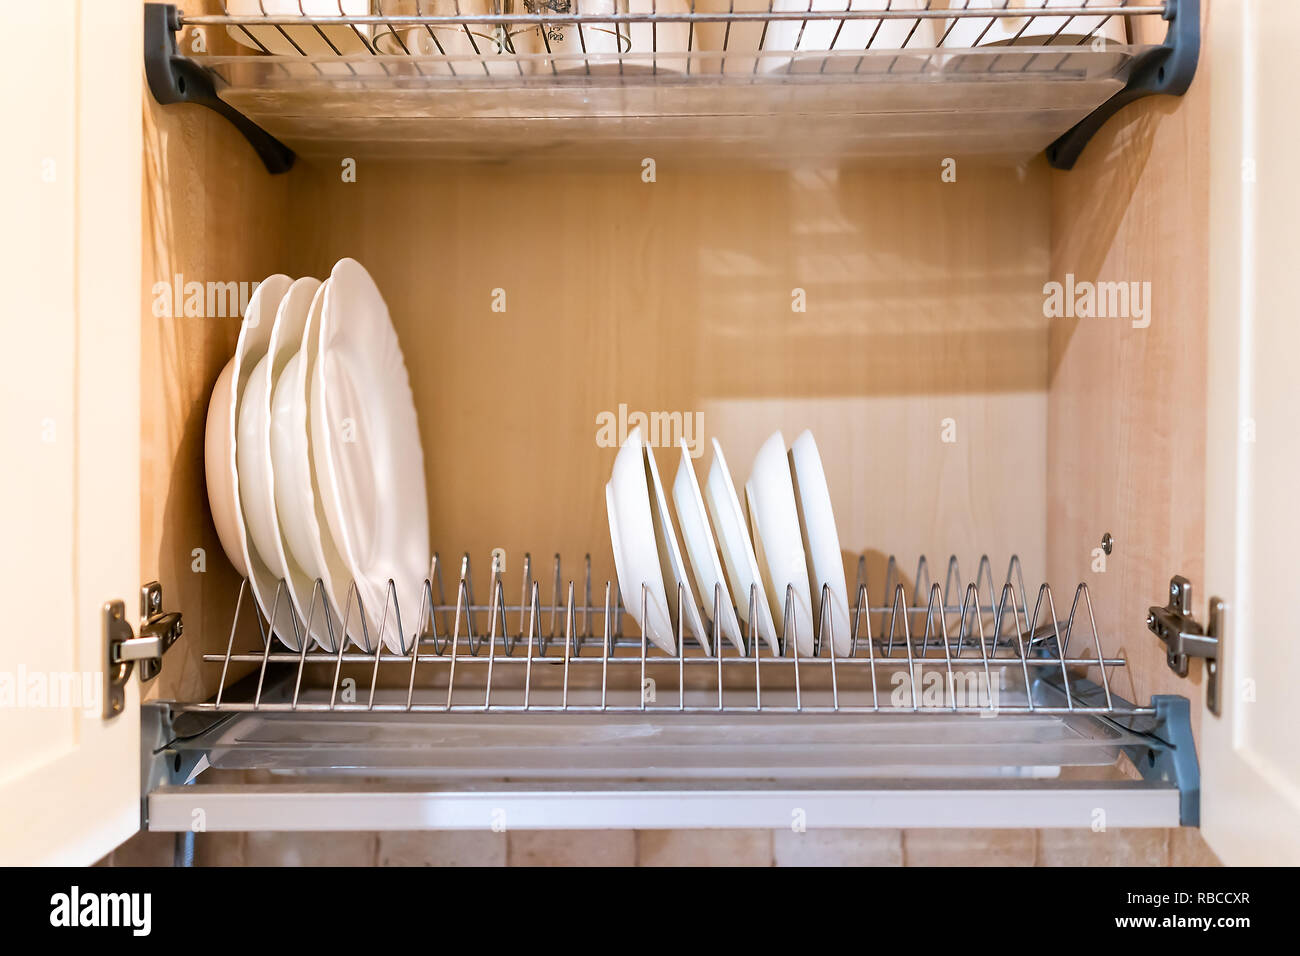 Offenes Licht gelb Küche aus Holz Schranktür Schrank mit vielen weißen und  sauberes Geschirr, Teller und Tassen auf Regalen closeup Stockfotografie -  Alamy